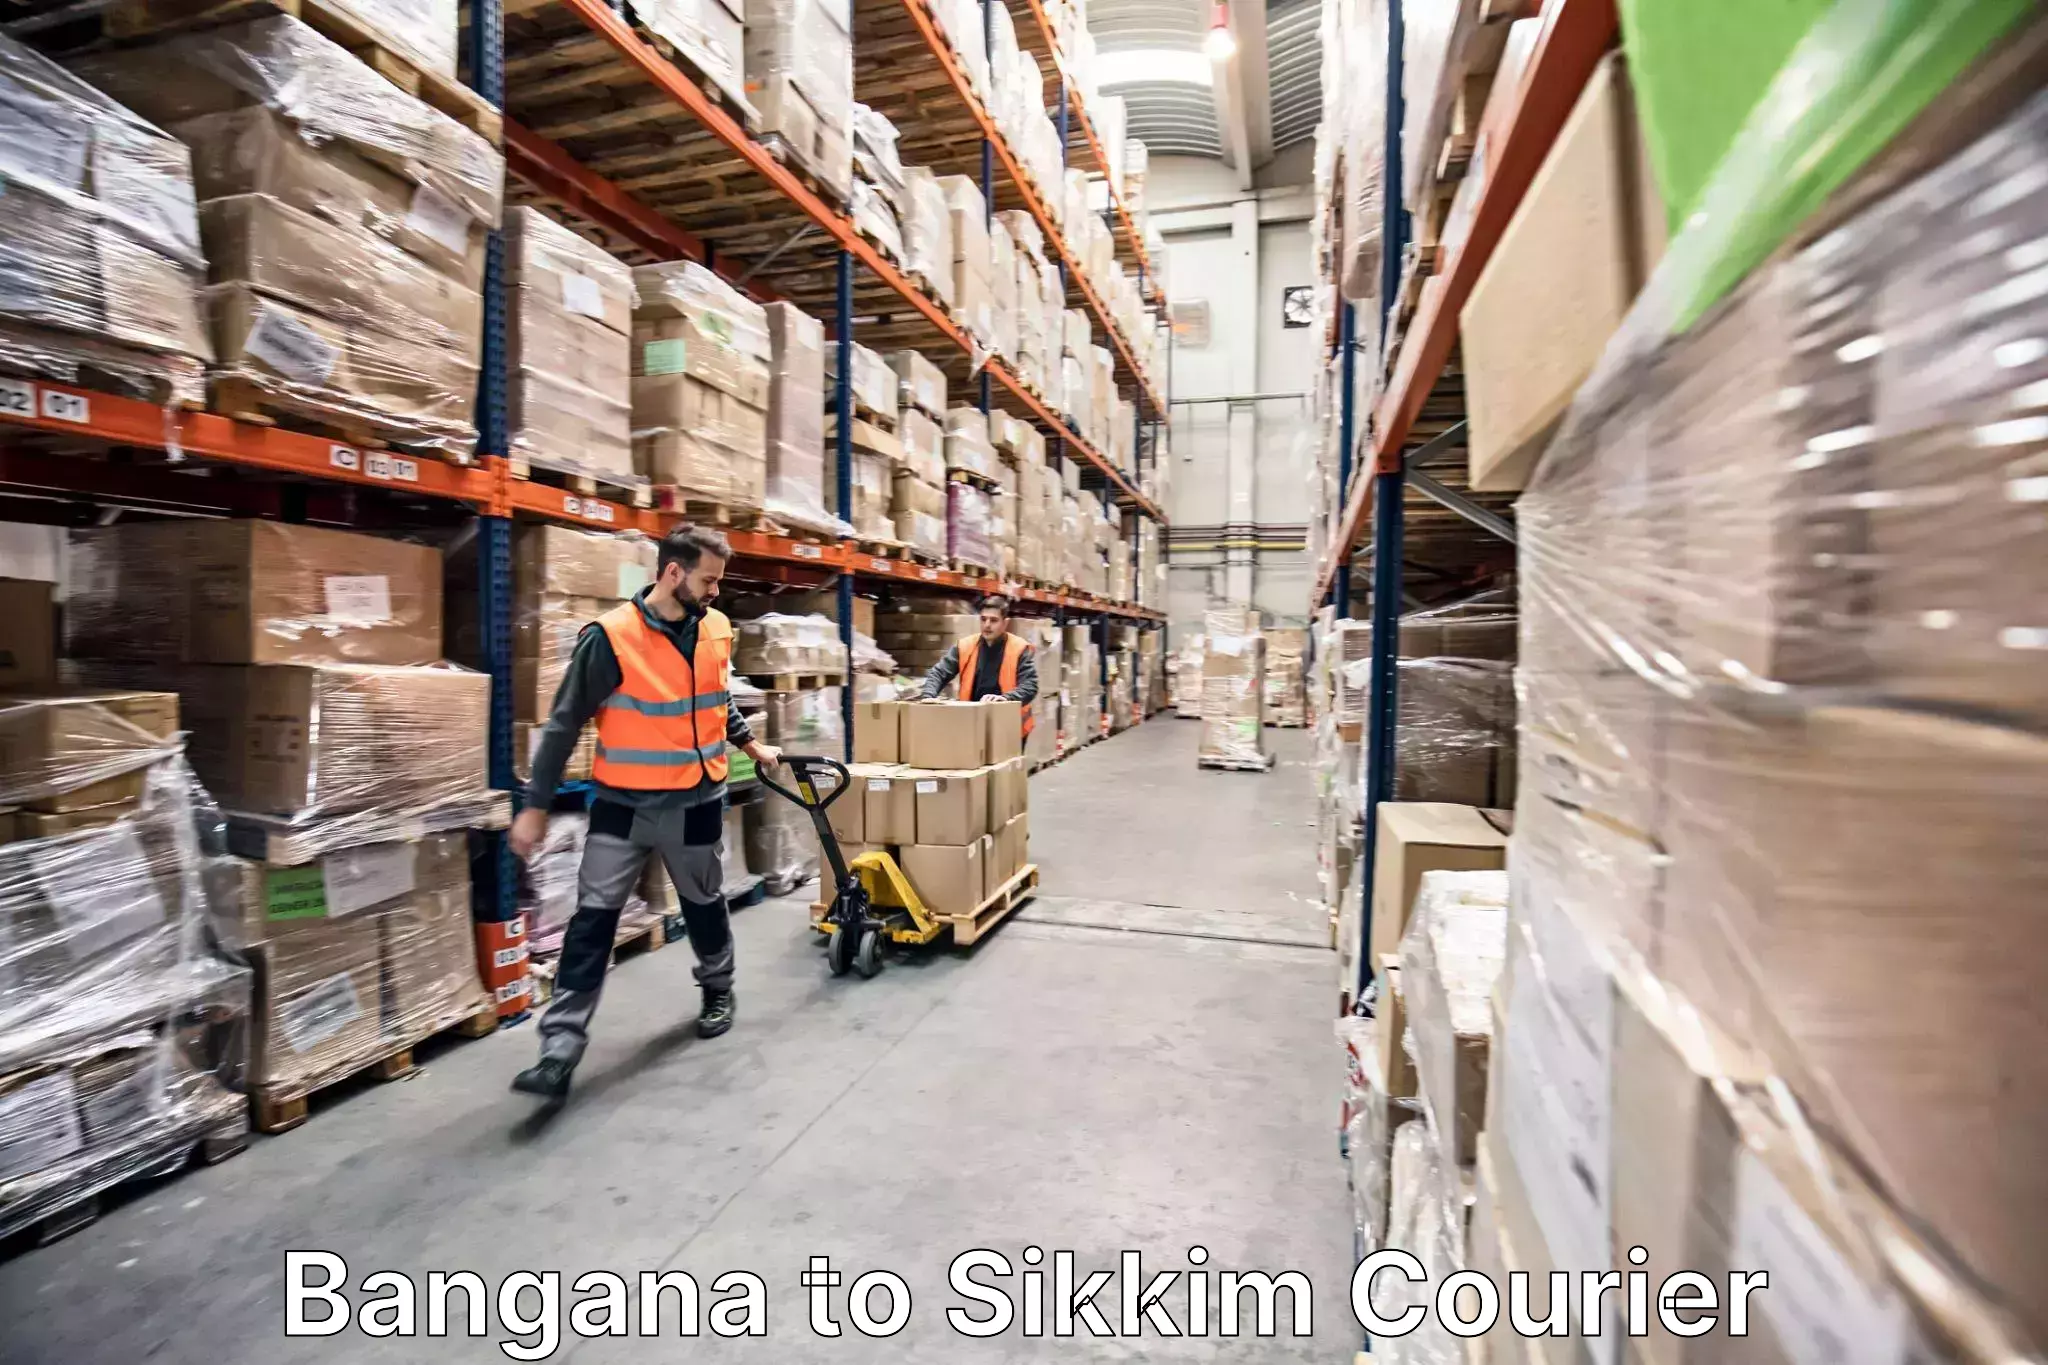 Home relocation experts Bangana to Mangan